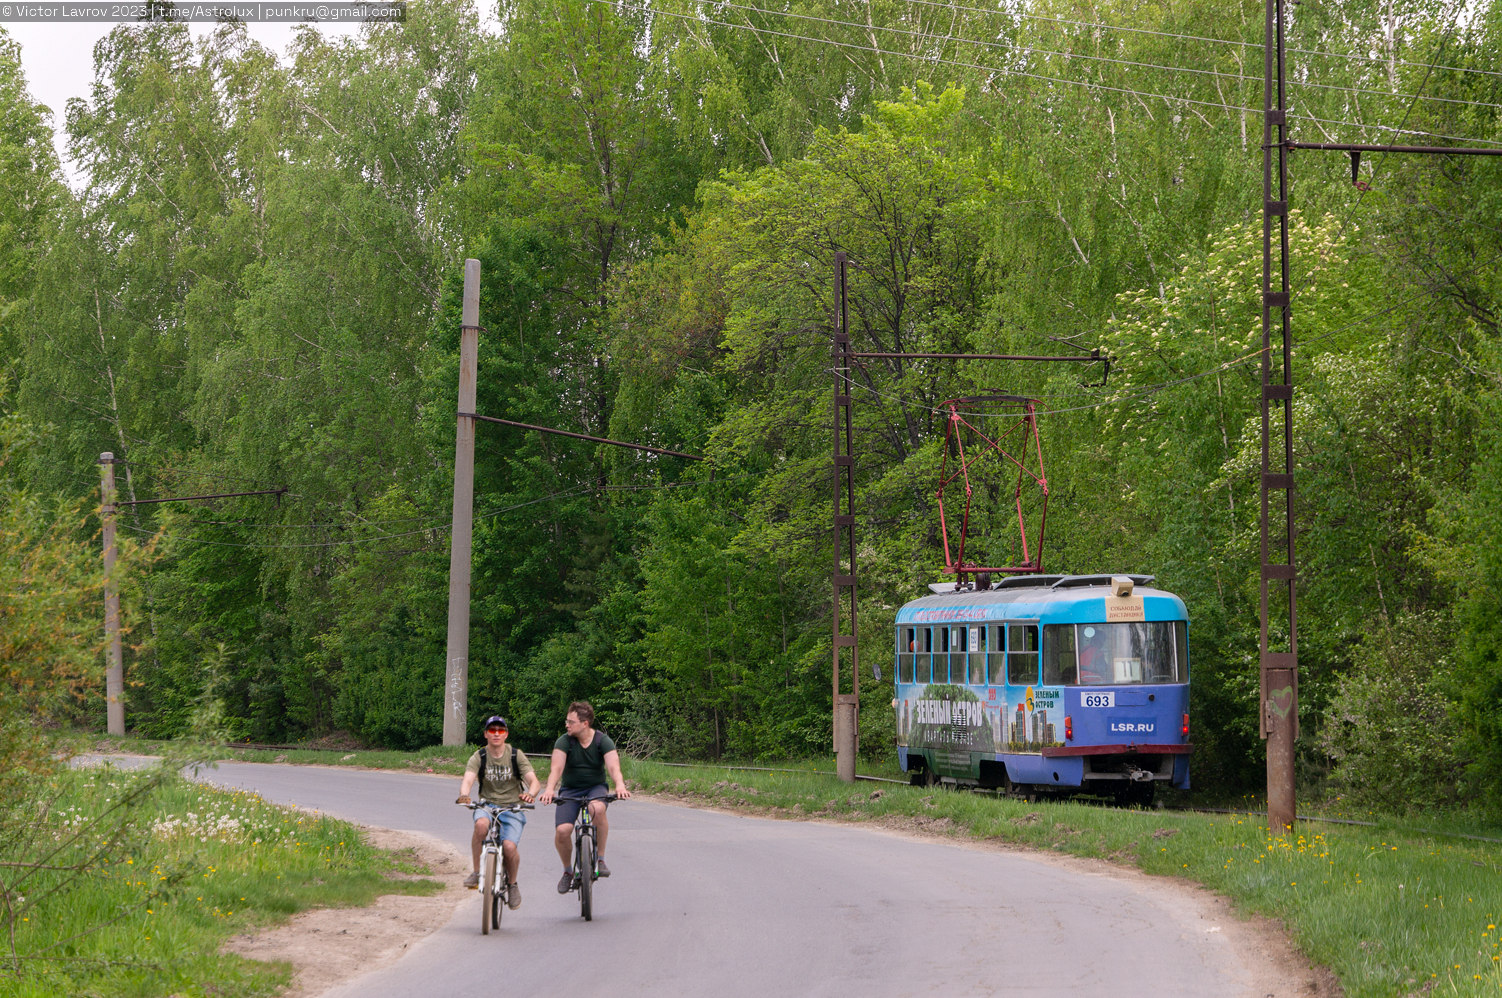 Jekatyerinburg — Line to Zelenyi Ostrov (Green Island)